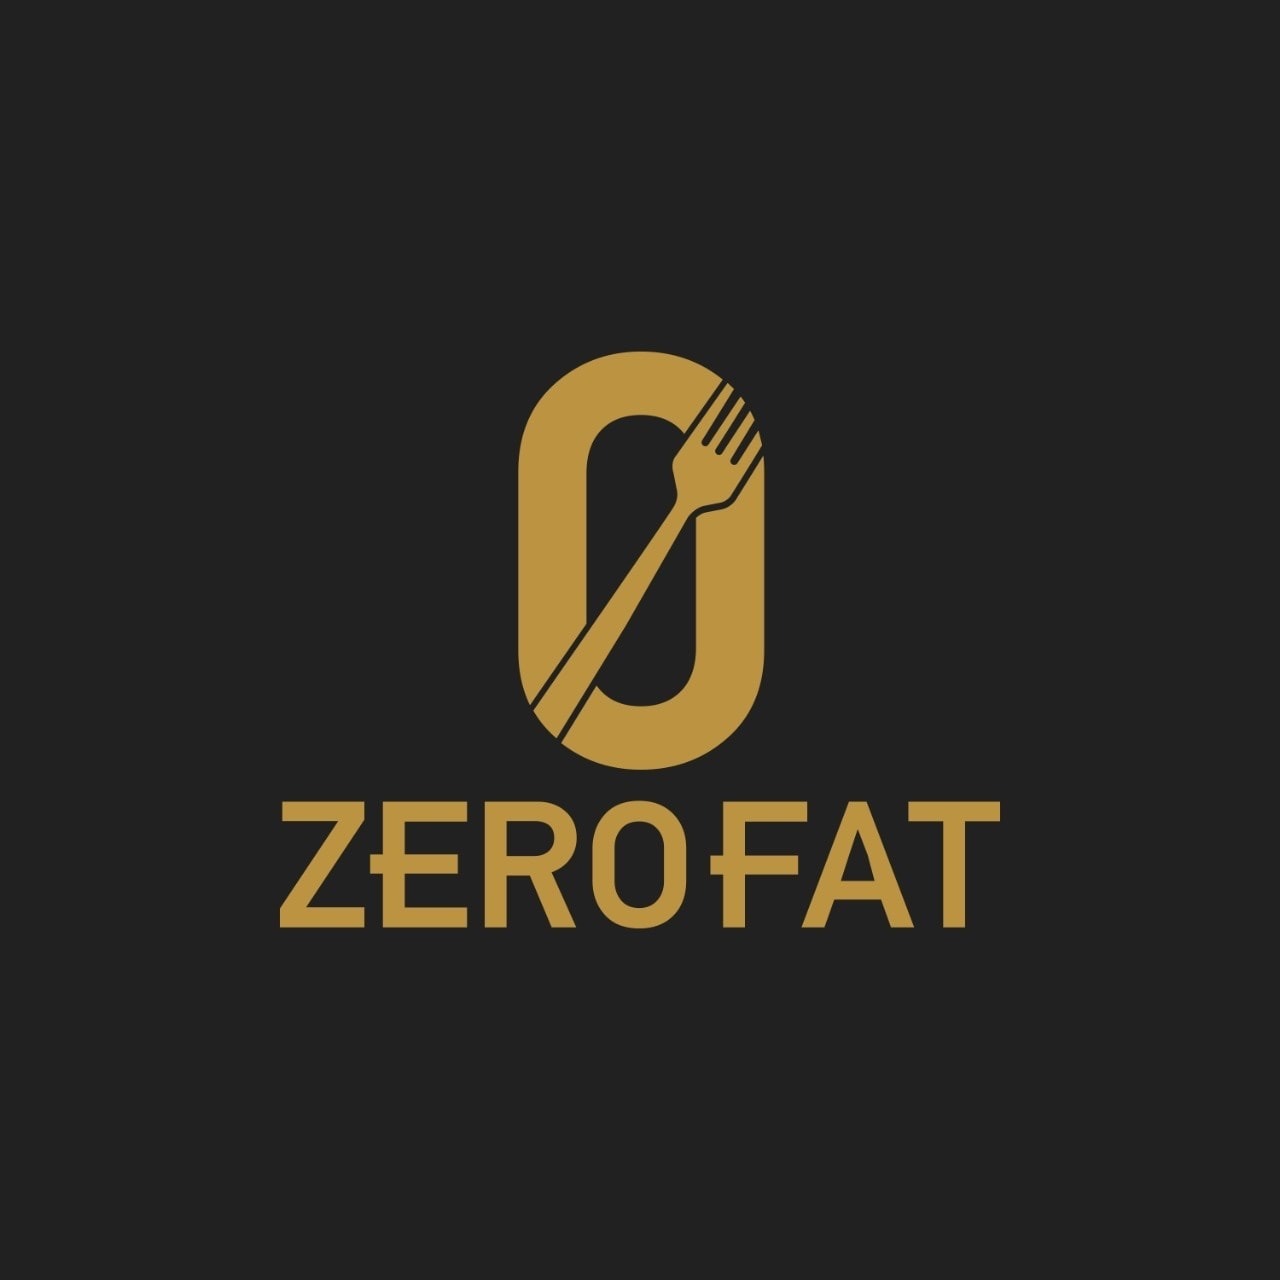 Zerofat - Coming Soon in UAE